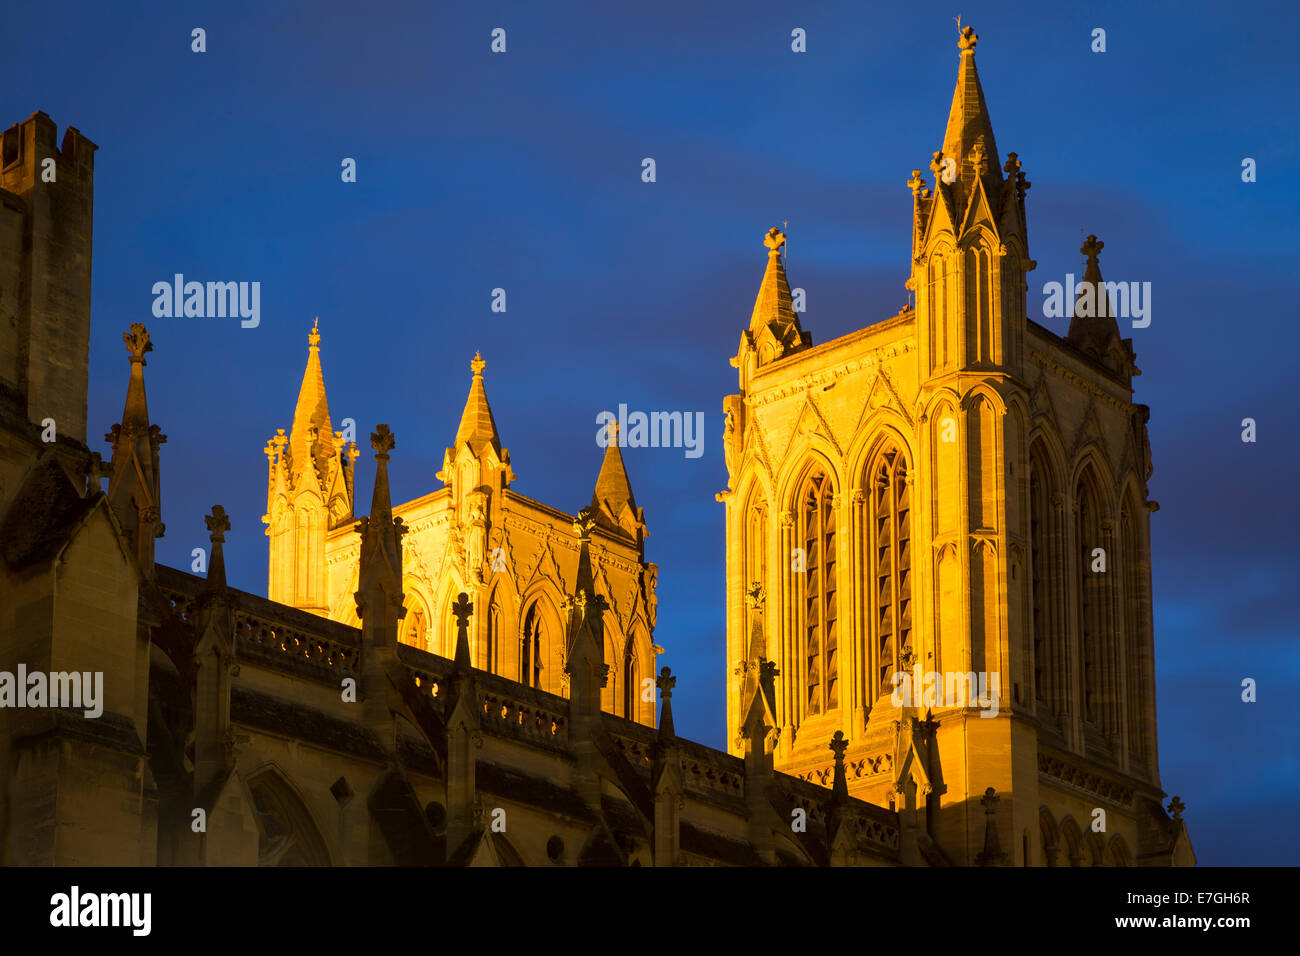 Las torres iluminadas de Iglesia Catedral de la santa e indivisa Trinidad, Bristol, Inglaterra Foto de stock